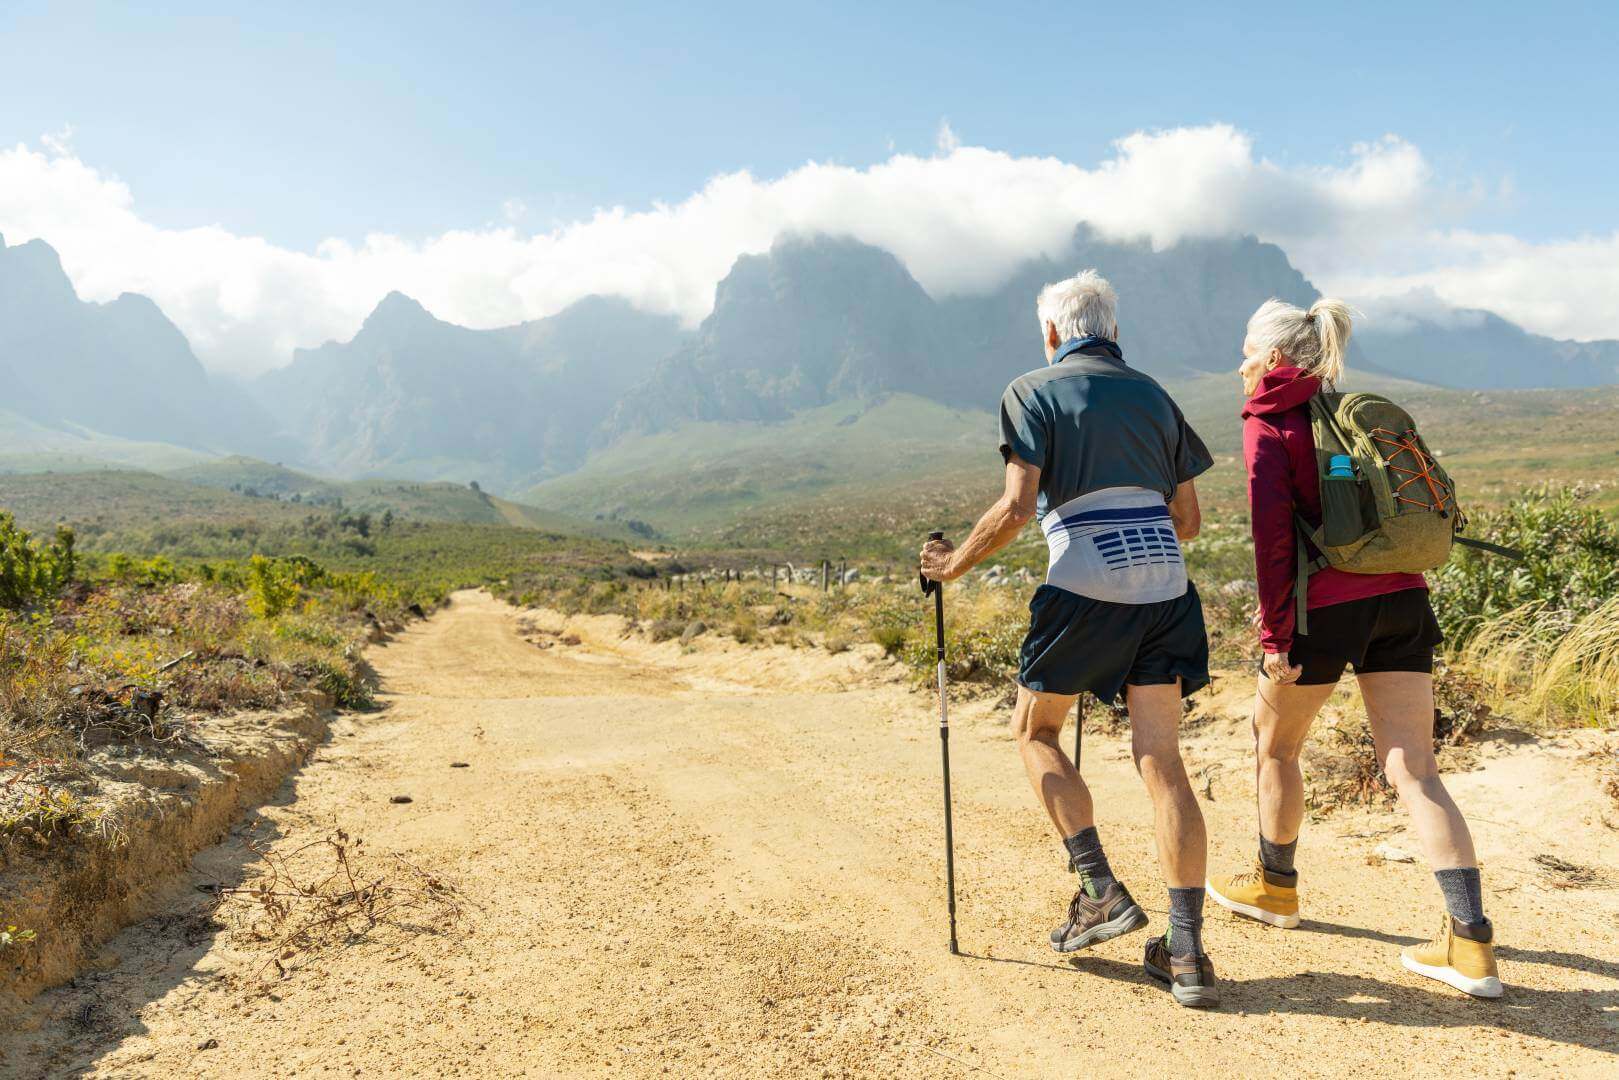 Abgebildet ist ein älteres Paar, das in einer sommerlichen Berglandschaft wandert. Zur Unterstützung nutzt der Mann Wanderstöcke und trägt eine Bauerfeind LumboLoc Rückenbandage.